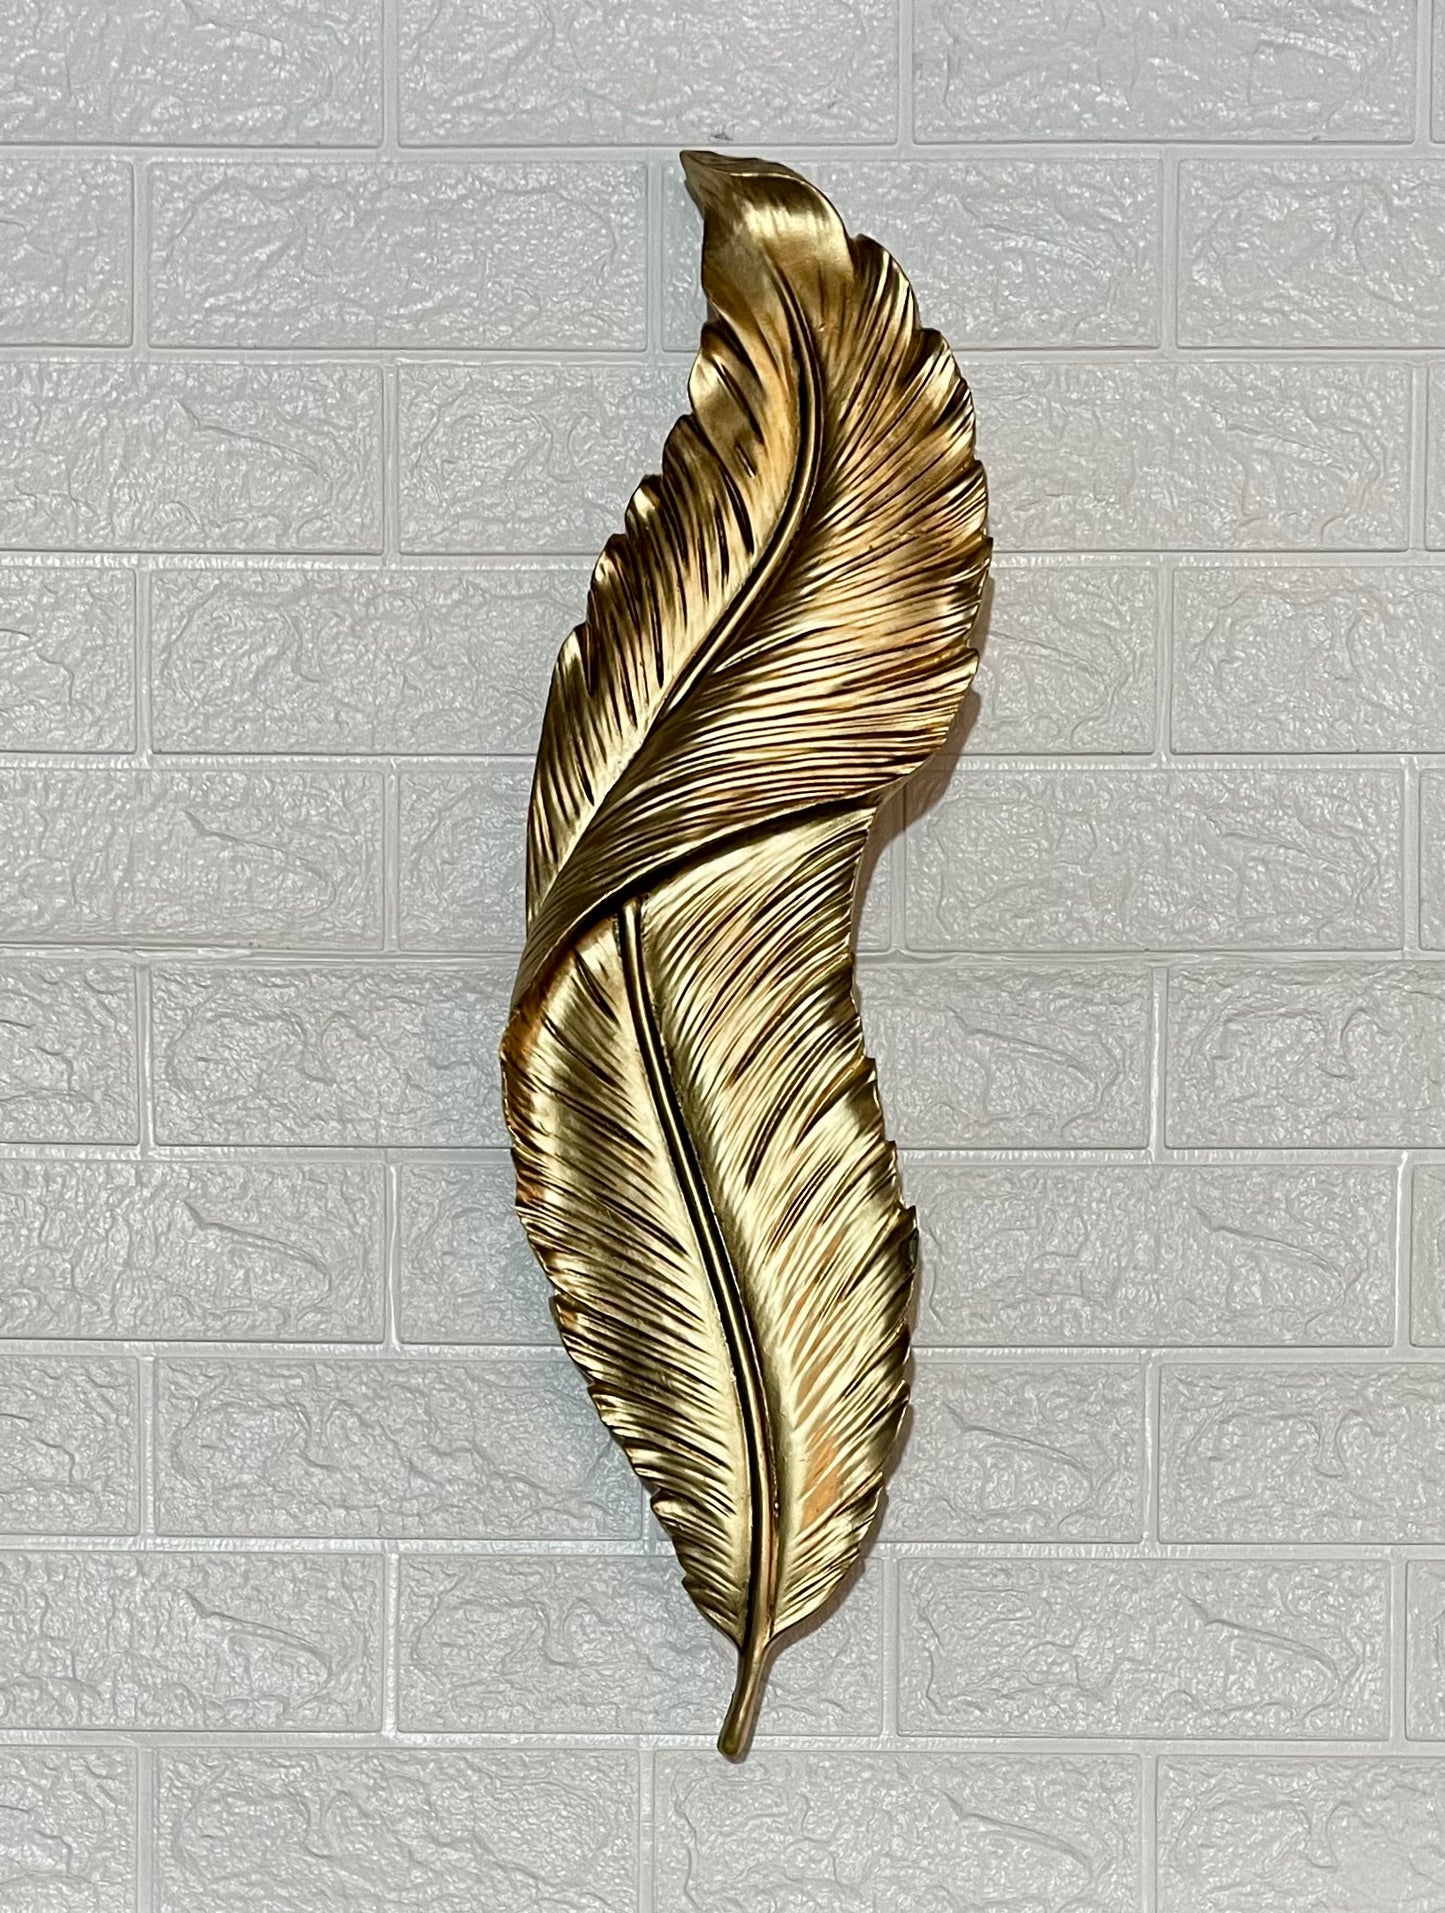 Golden Feather Light 60Cms